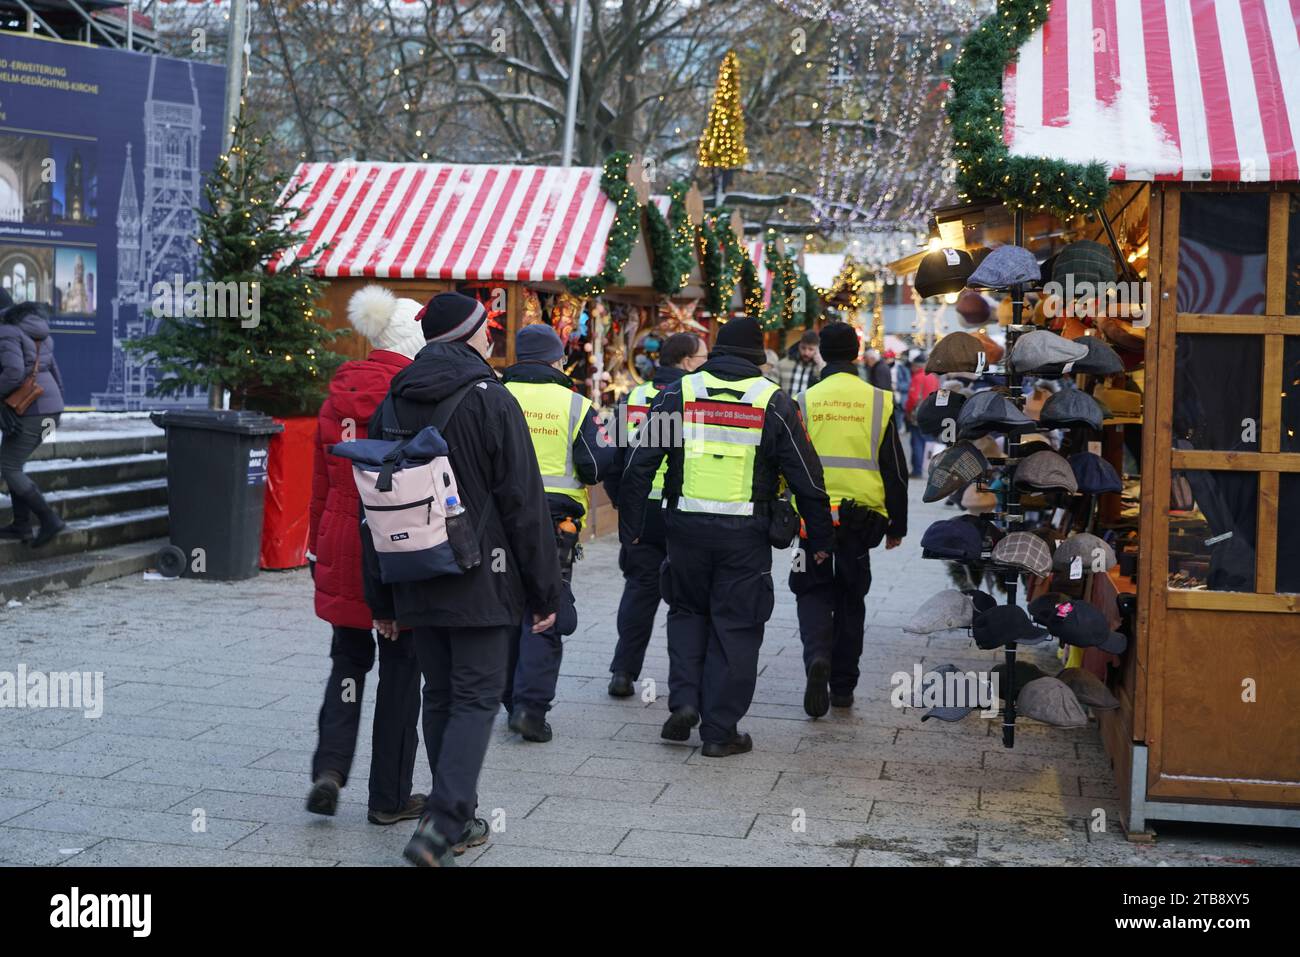 Weihnachtsmarkt auf dem Breitscheidplatz in Berlin. Erhöhte Sicherheitsstandards wegen Terrorgefahr, Sicherheitspersonal, Polizei, Berlin Stock Photo